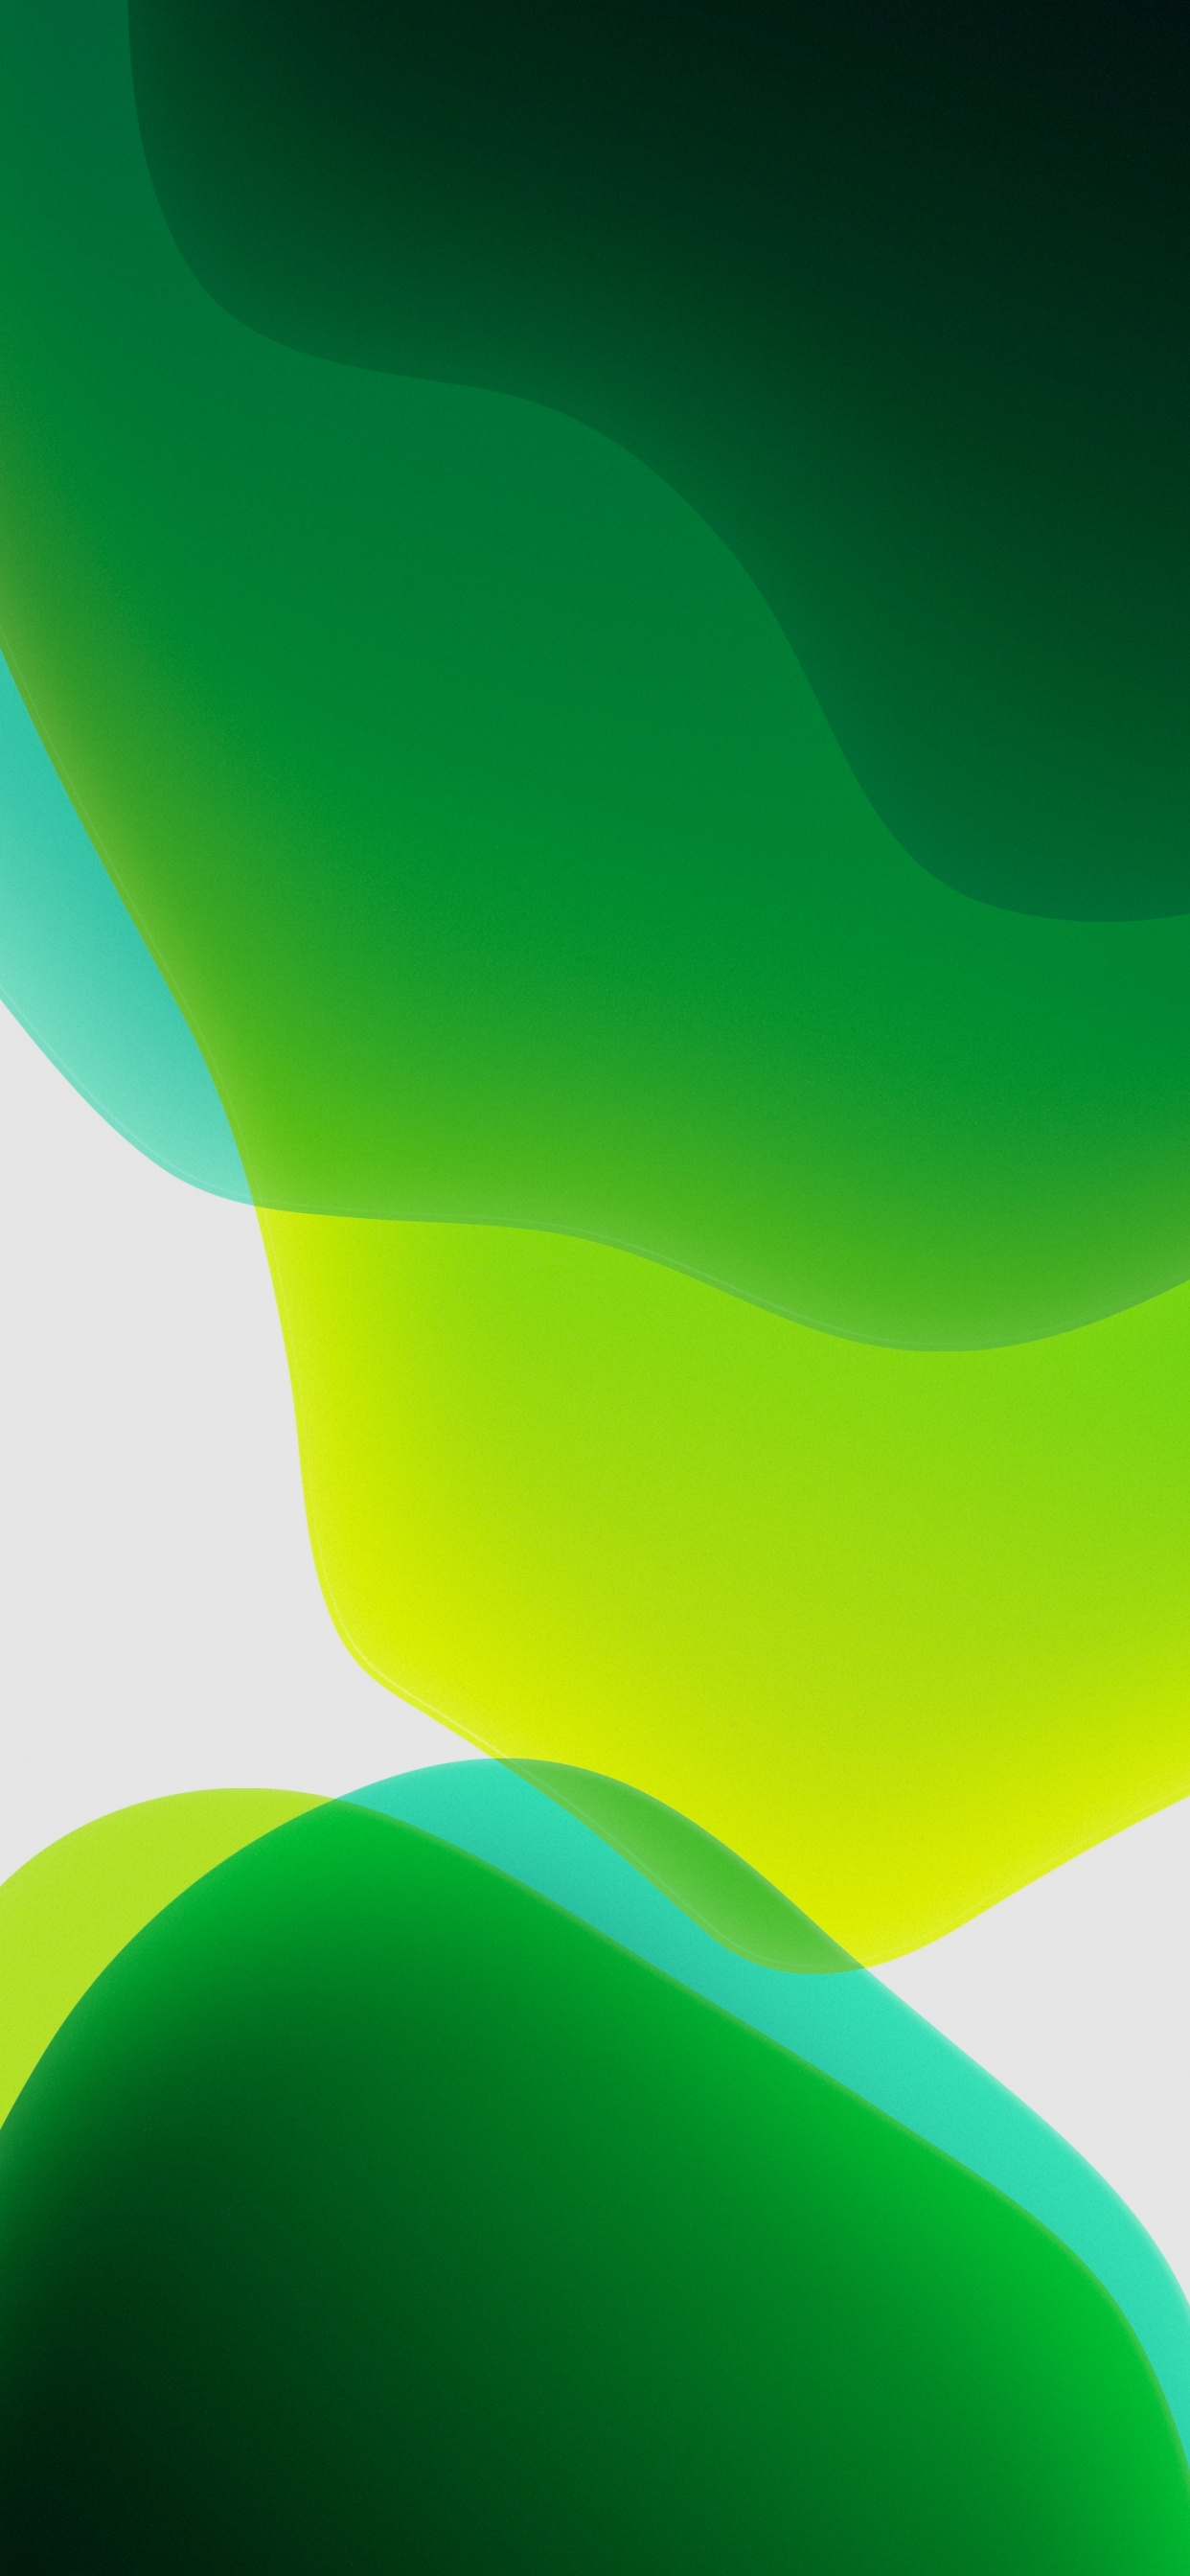 Bức ảnh nền iPadOS Wallpaper 4K, Stock, Green, Abstract, #1549 sẽ làm cho màn hình thiết bị của bạn trở nên độc đáo và tinh tế hơn. Hãy xem ngay bức ảnh Green Abstract Wallpaper để thấy được sự độc đáo mà nó mang lại.